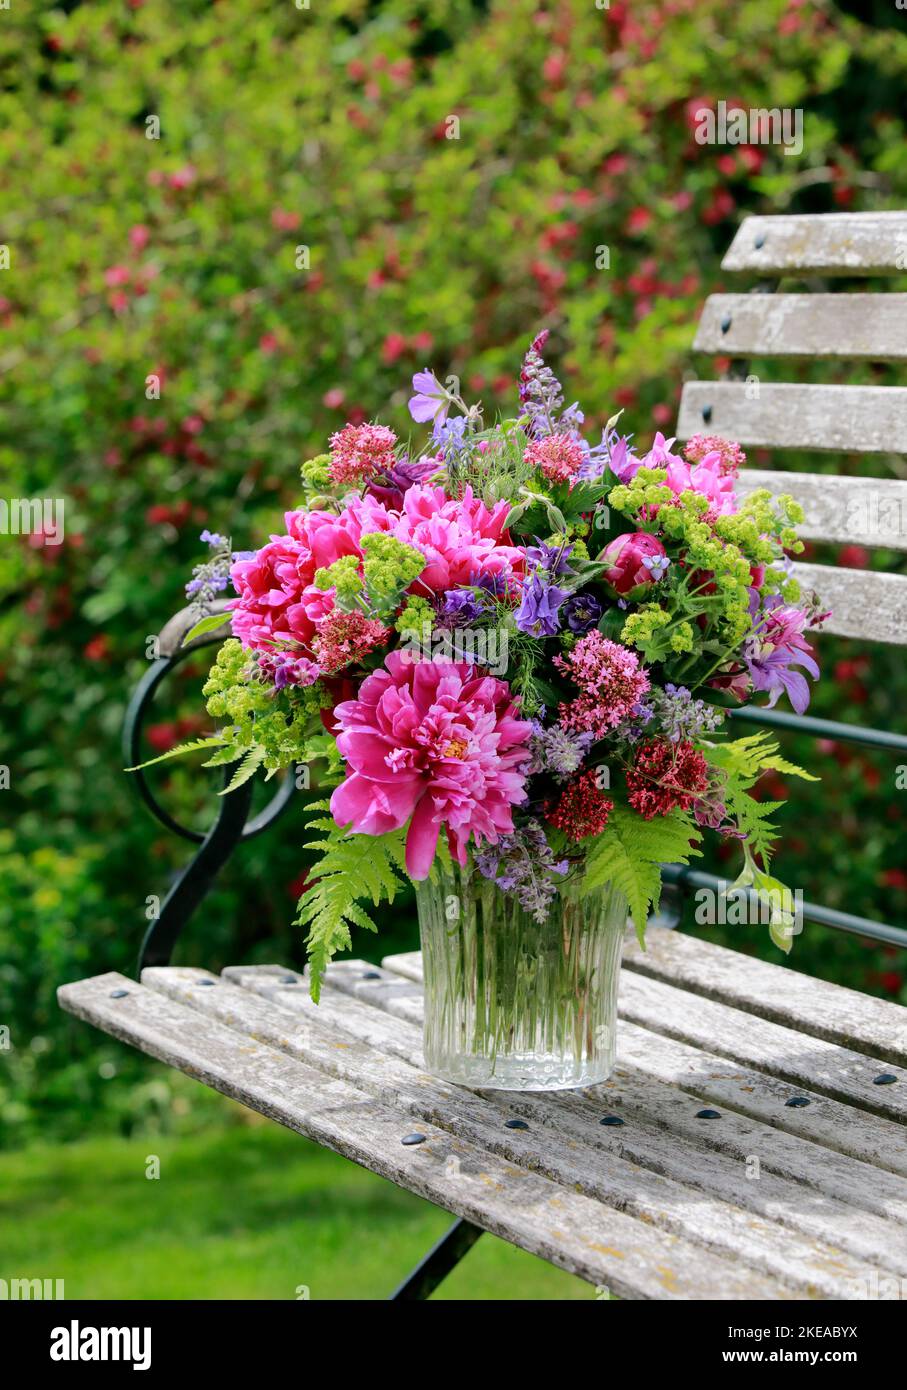 Bungter Blumenstrauss in rot, pink und violett Farbtönen mit Pfingstrosen und Akeleien, steht in Glas-Vase auf dekorativen Holz-Gartenbank Foto Stock